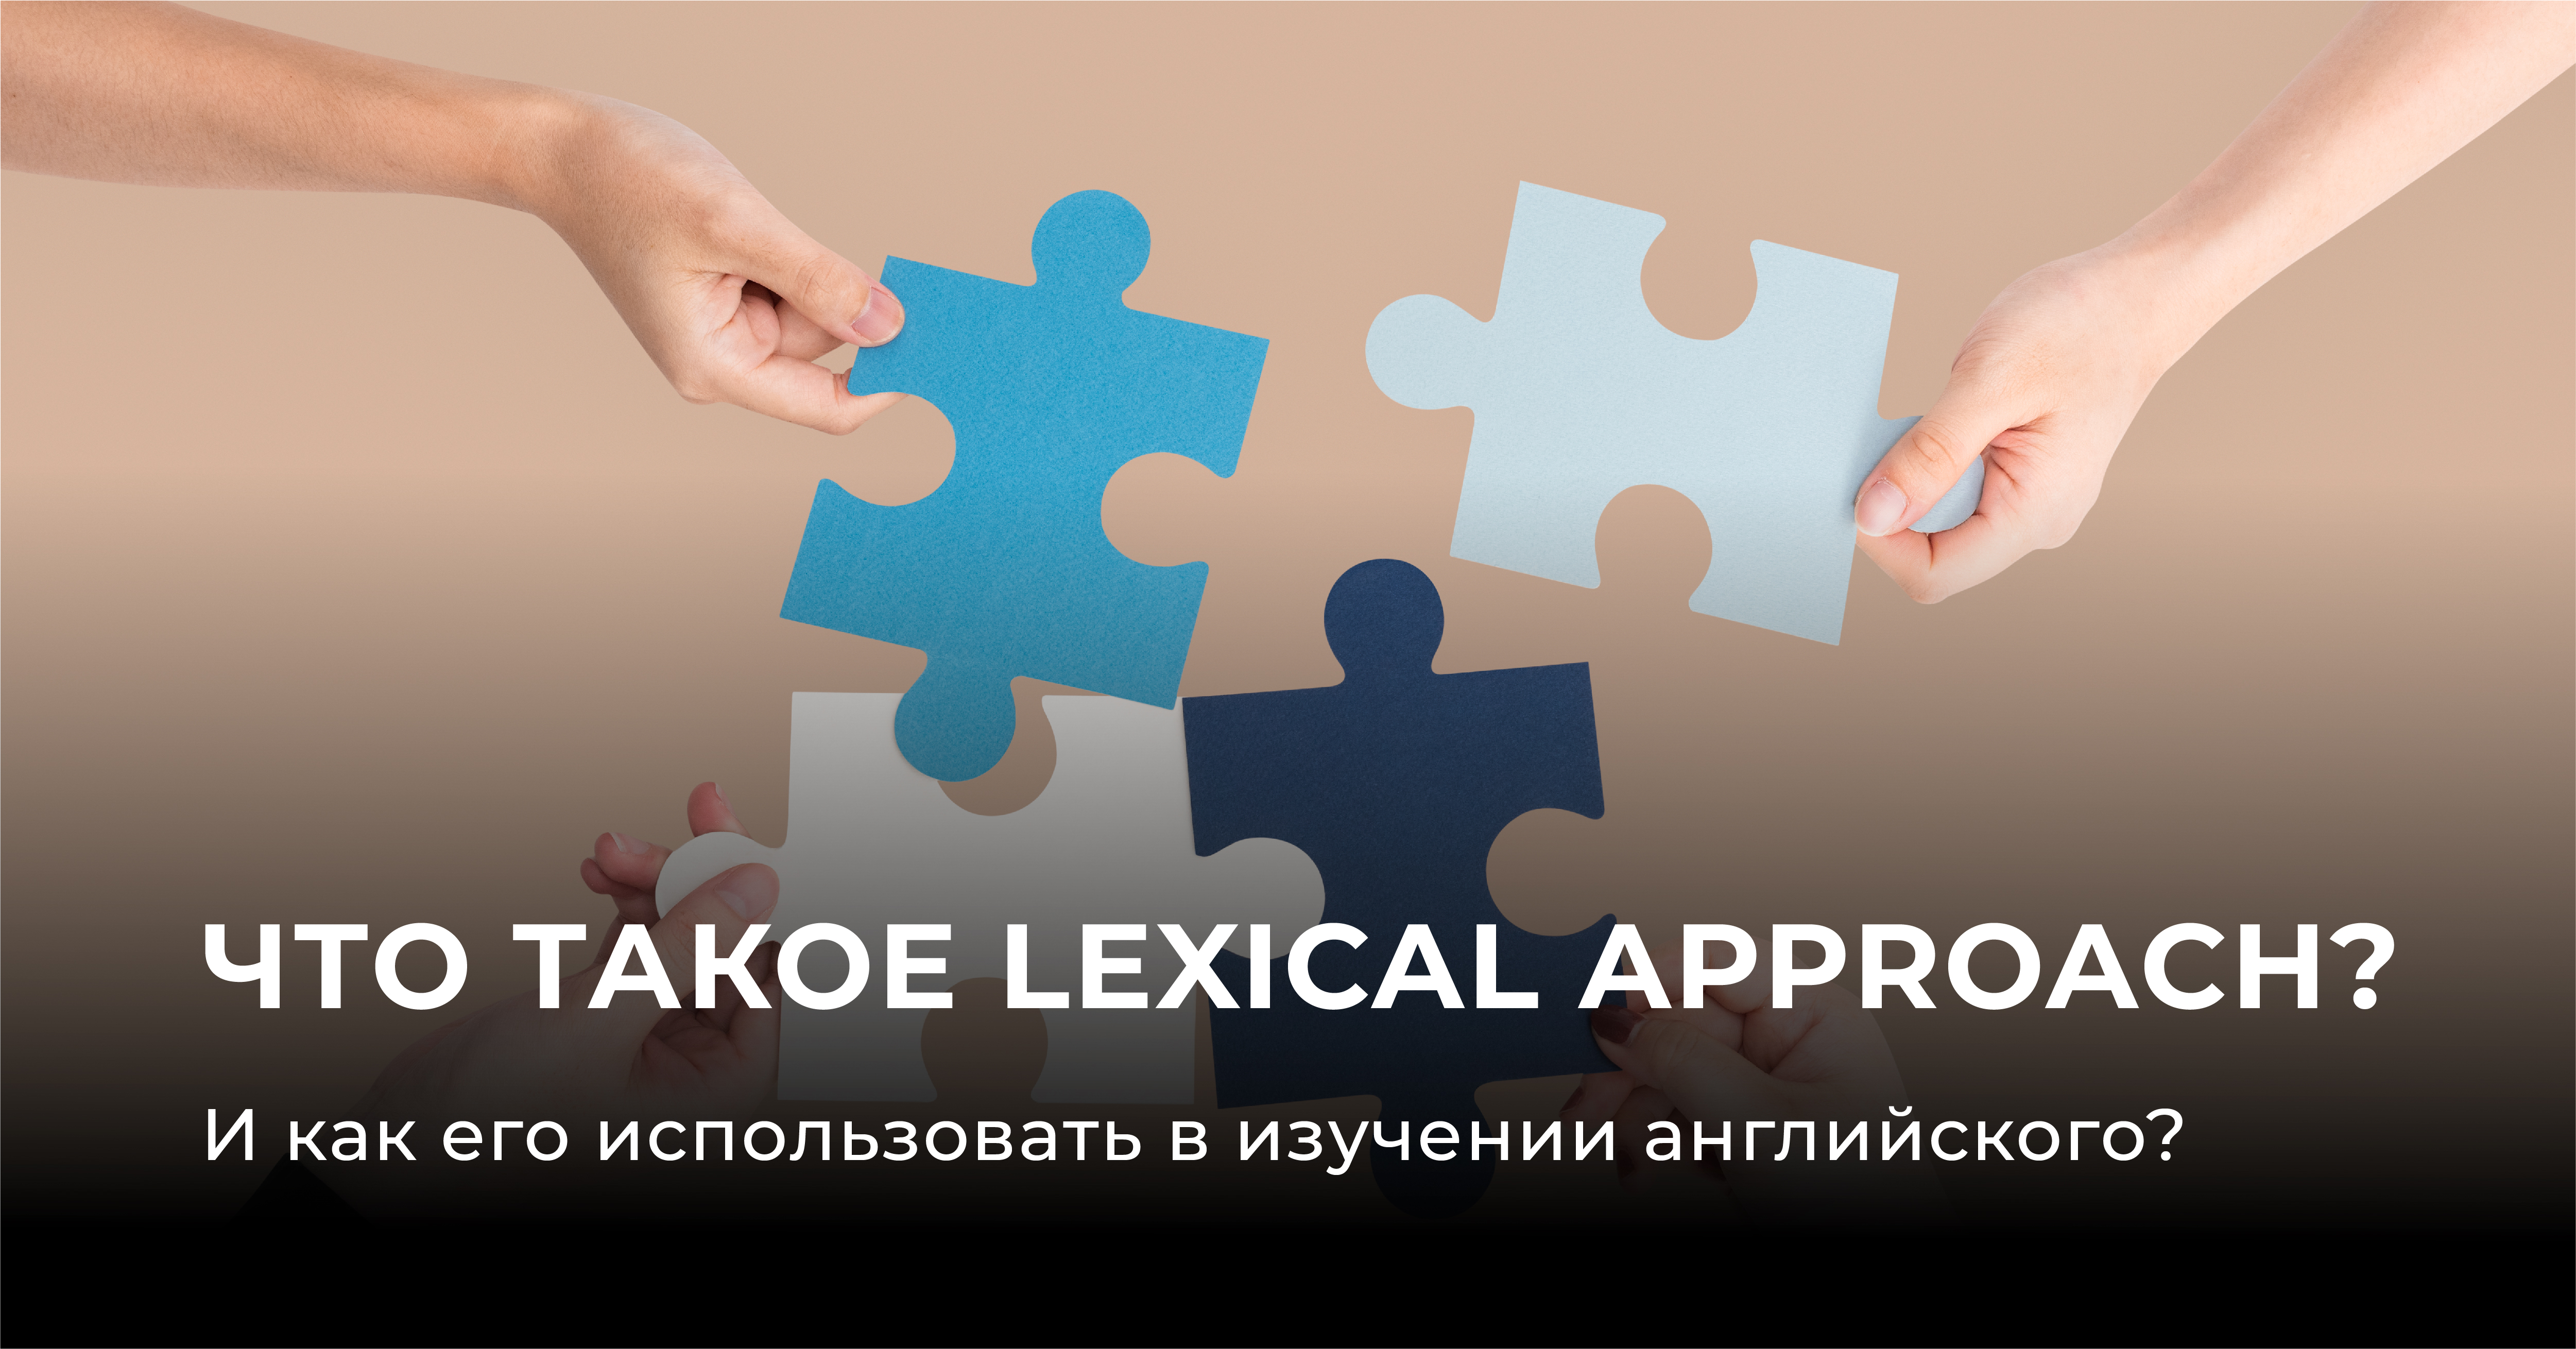 Что такое Lexical approach? И как его использовать в изучении английского?